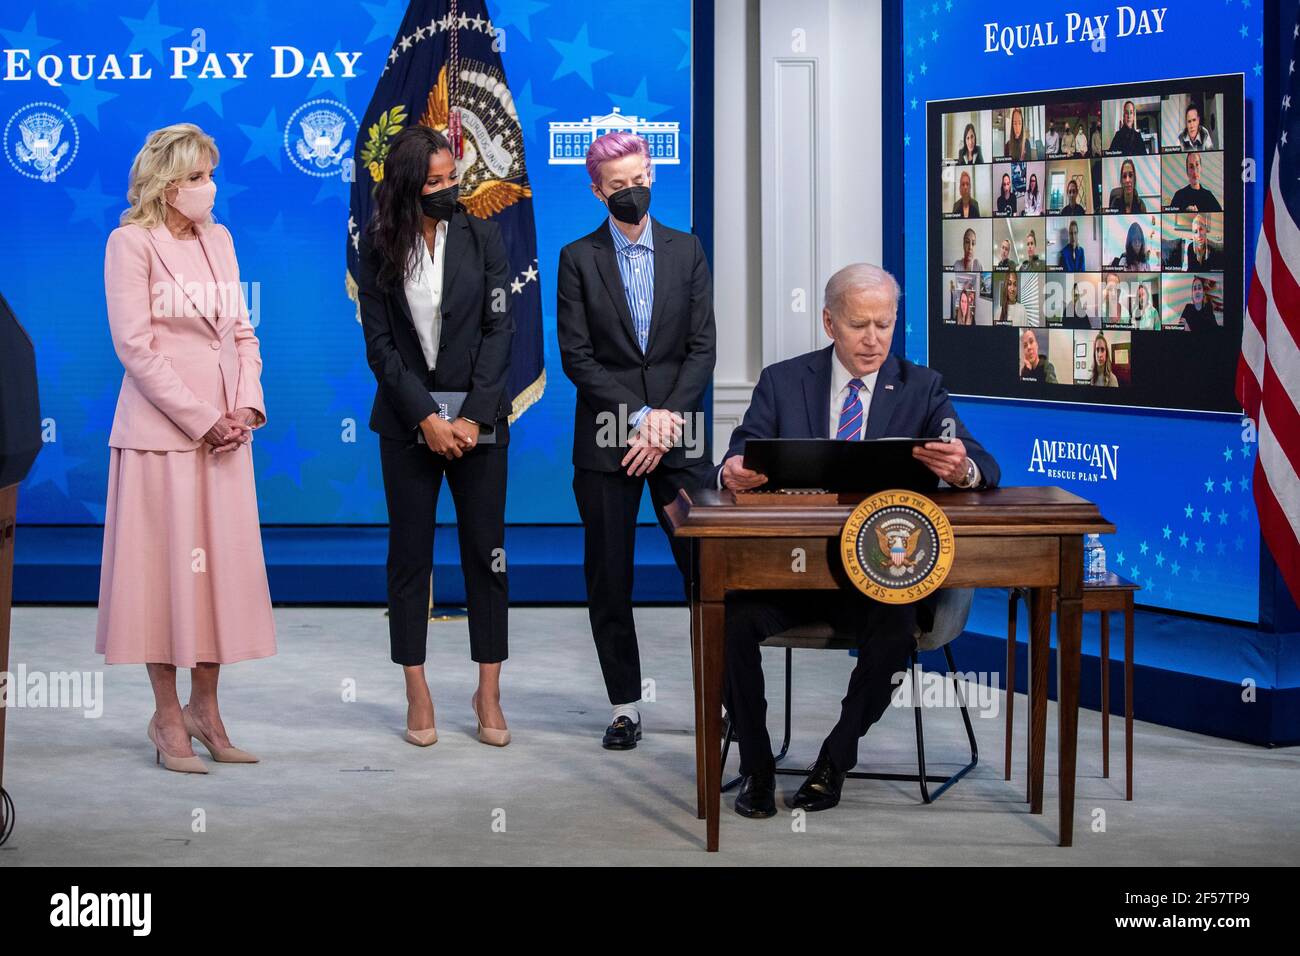 El Presidente DE LOS ESTADOS UNIDOS Joe Biden, con la primera Dama Dr. Jill Biden (L), Margaret Purce (2-L), Megan Rapinoe (2-R) y otros miembros WomenÕs del Equipo Nacional de Fútbol de los Estados Unidos, firma una proclamación durante un evento para conmemorar el día de la igualdad de remuneración en el comedor estatal de la Casa Blanca en Washington, DC, EE.UU., 24 de marzo de 2021. El día de igual paga Marca el tiempo extra que toma una mujer promedio en los Estados Unidos para ganar la misma paga que sus contrapartes masculinas hicieron el año calendario anterior. Foto de stock